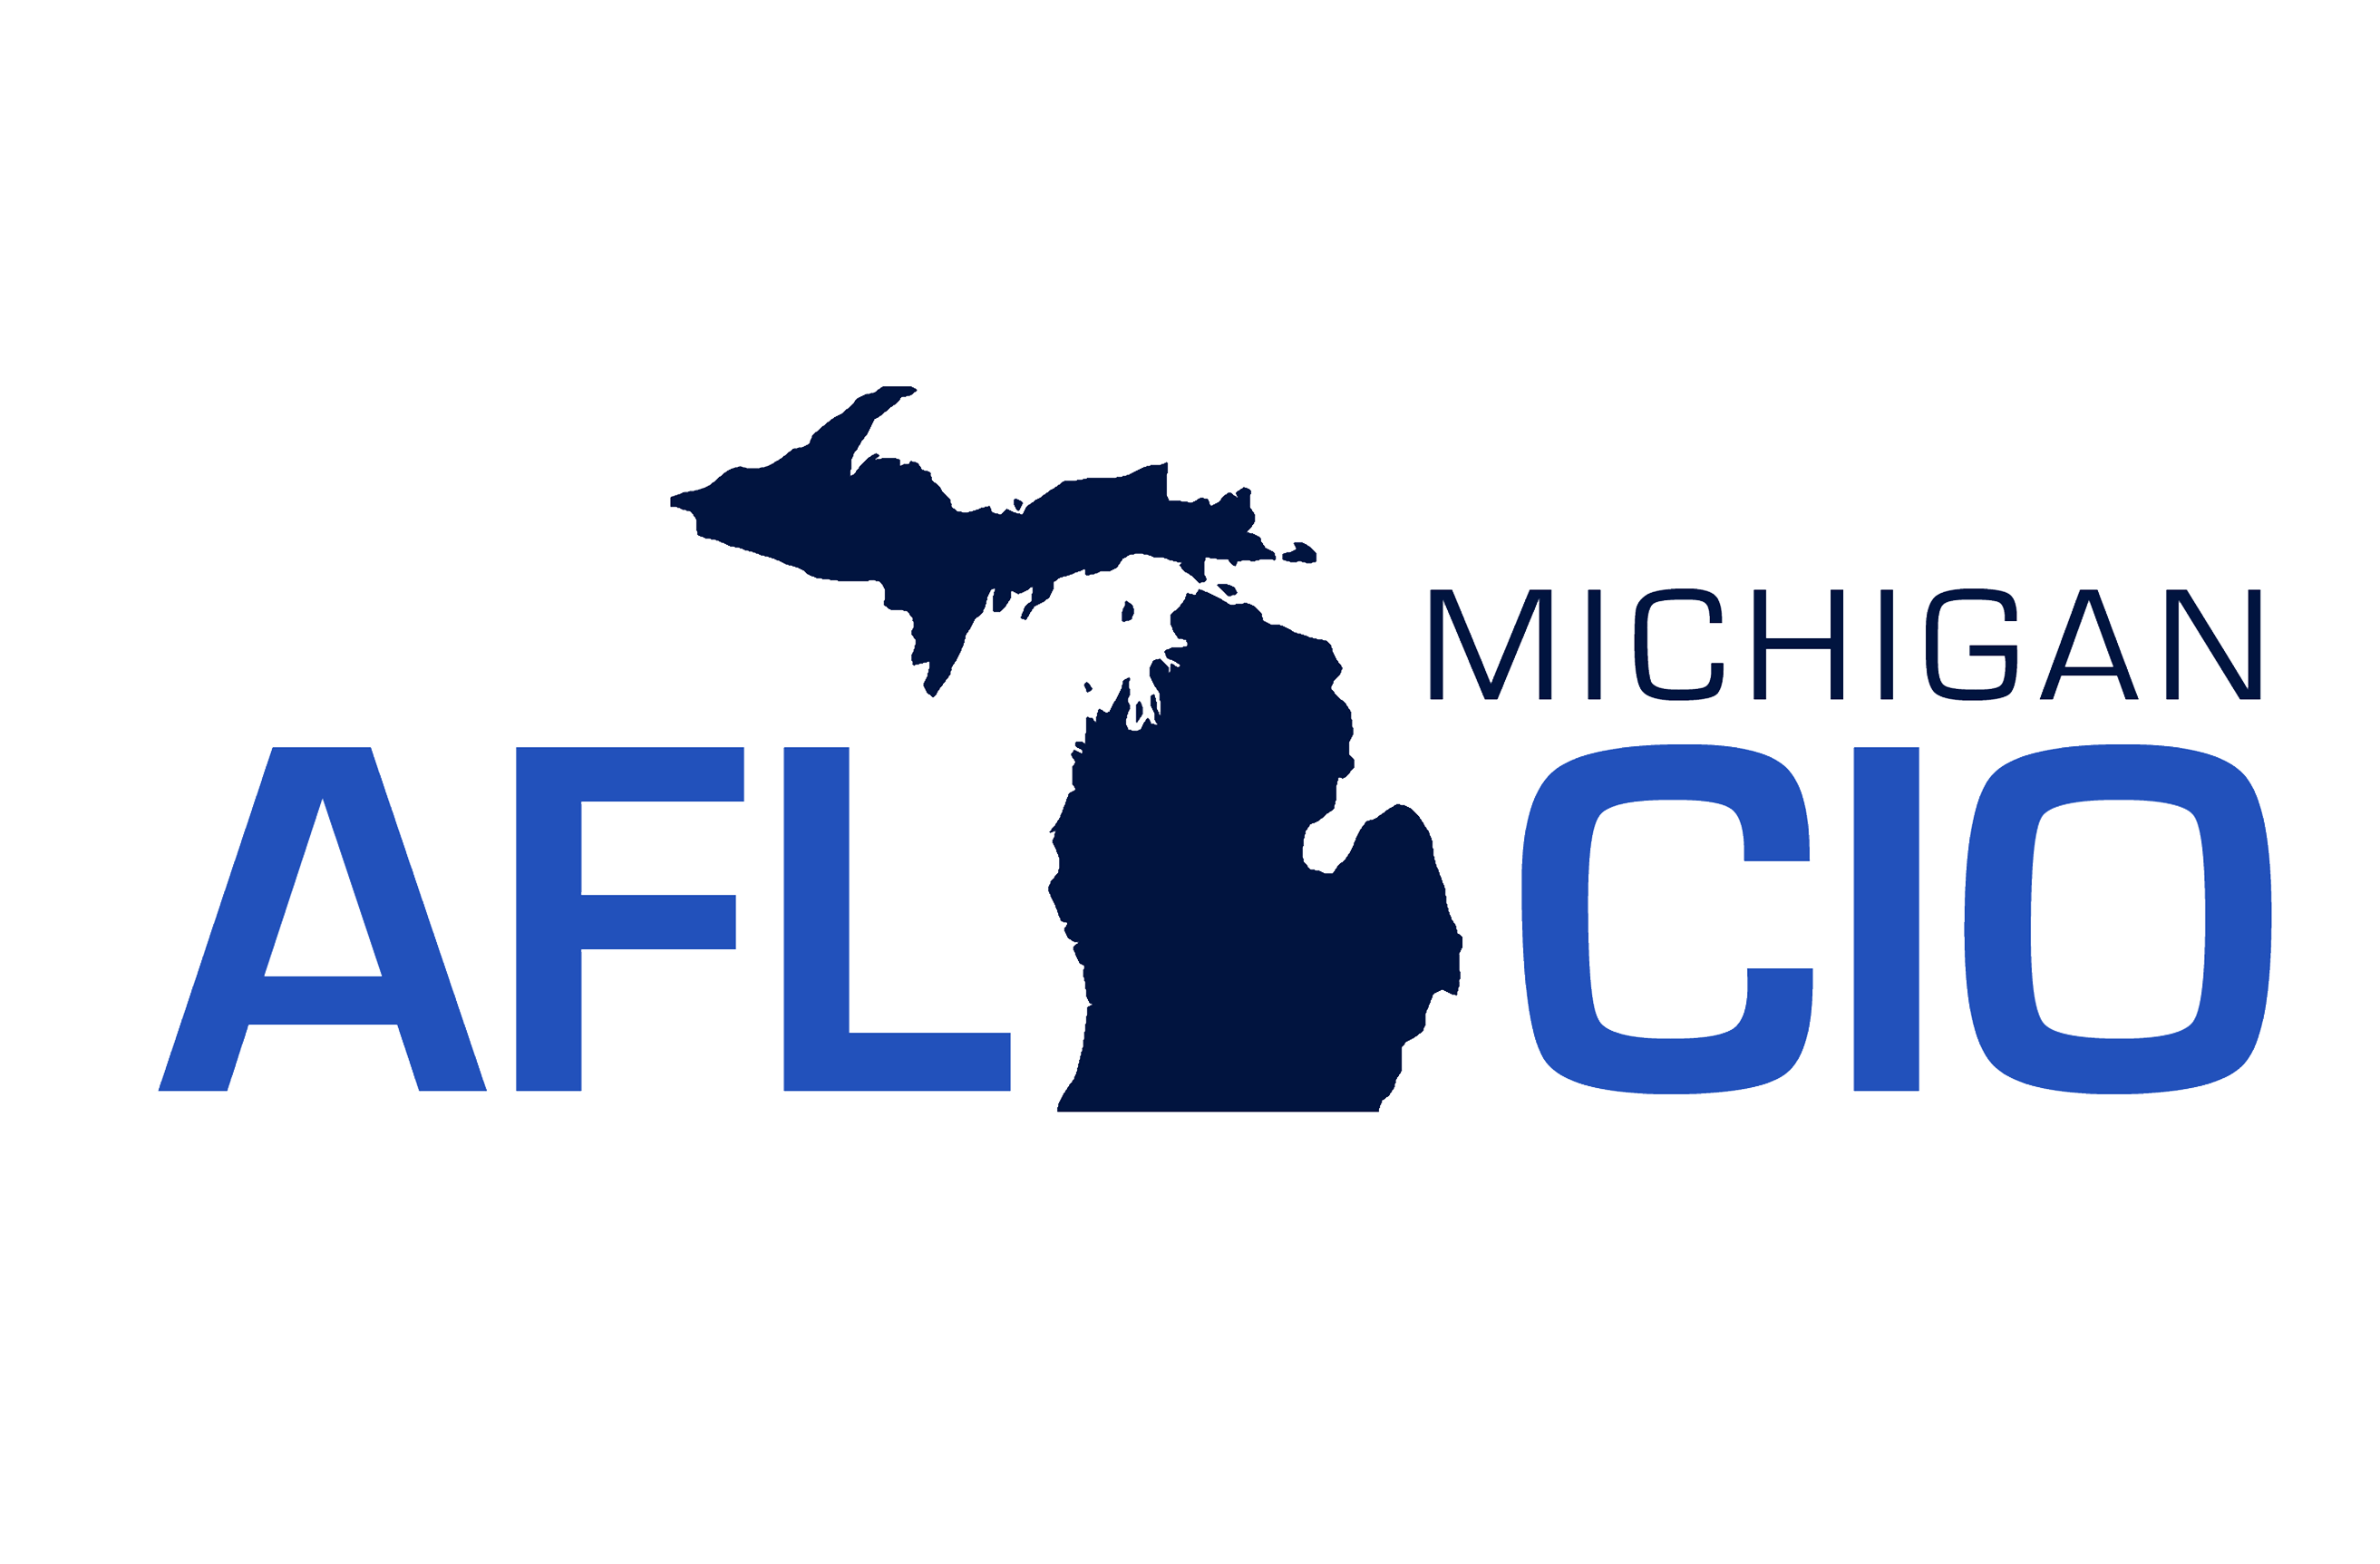 AFL-CIO Logo - Home AFL CIO